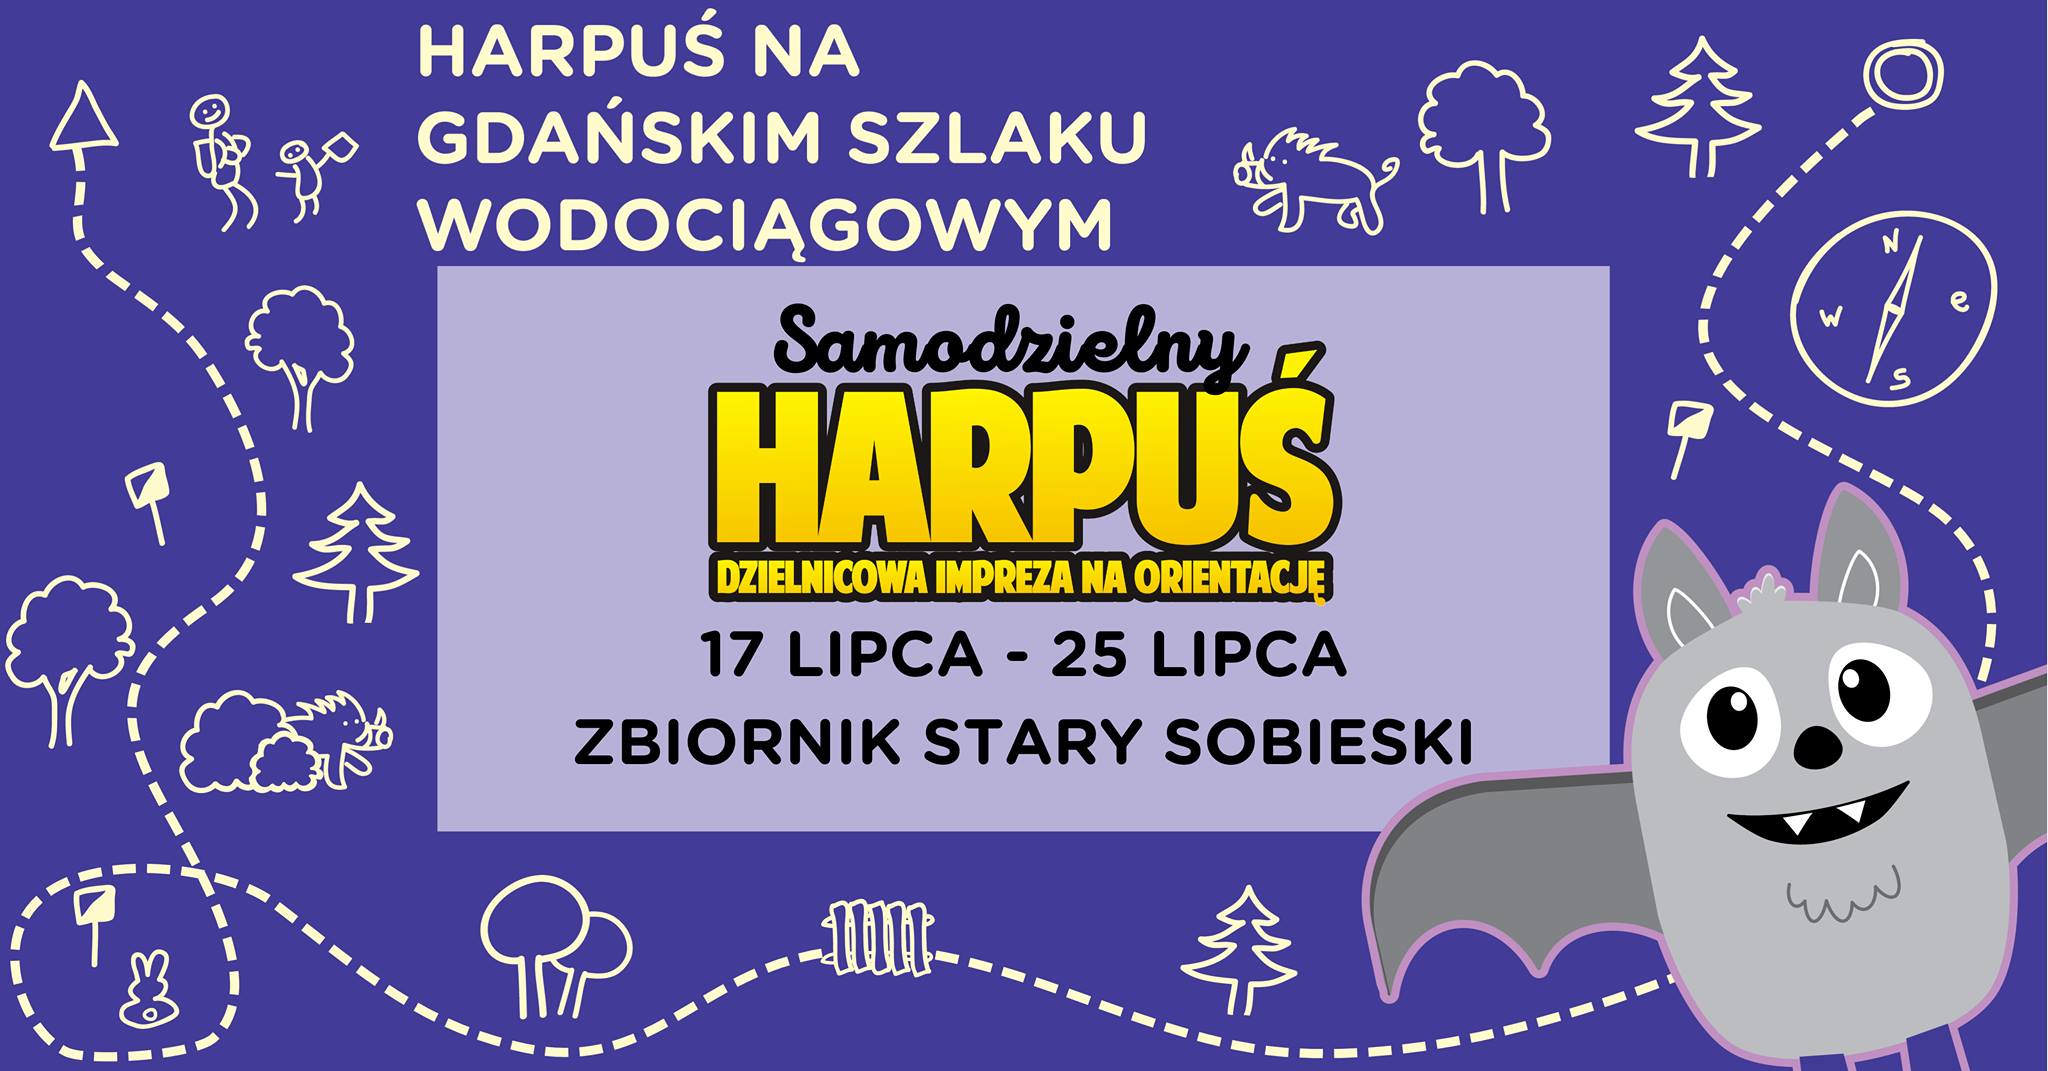 Samodzielny Harpuś - Dzielnicowa impreza na orientację: Zbiornik Wody Stary Sobieski